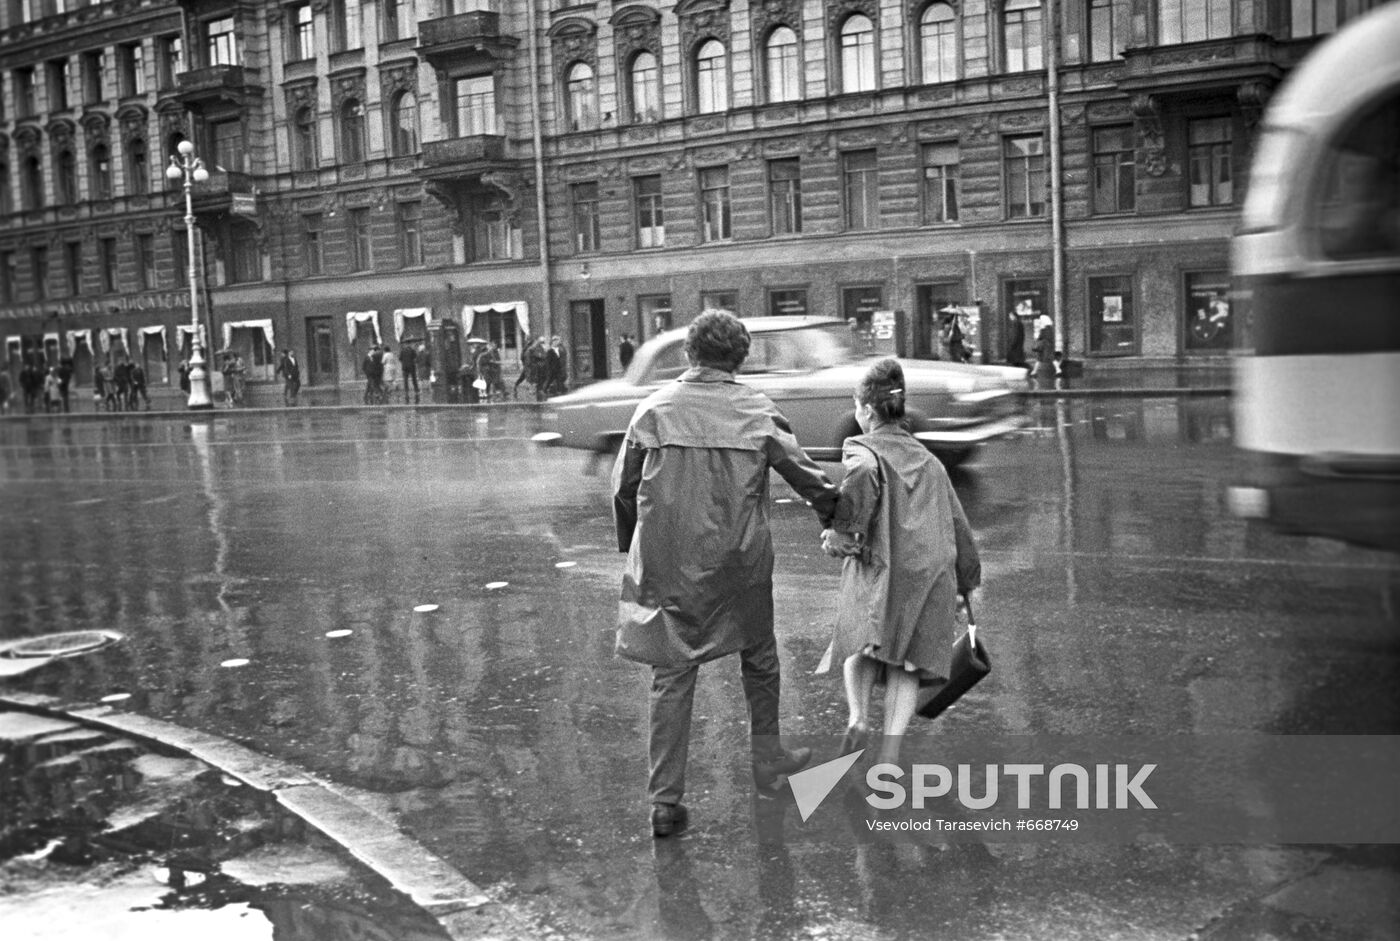 Nevsky Prospekt after rain